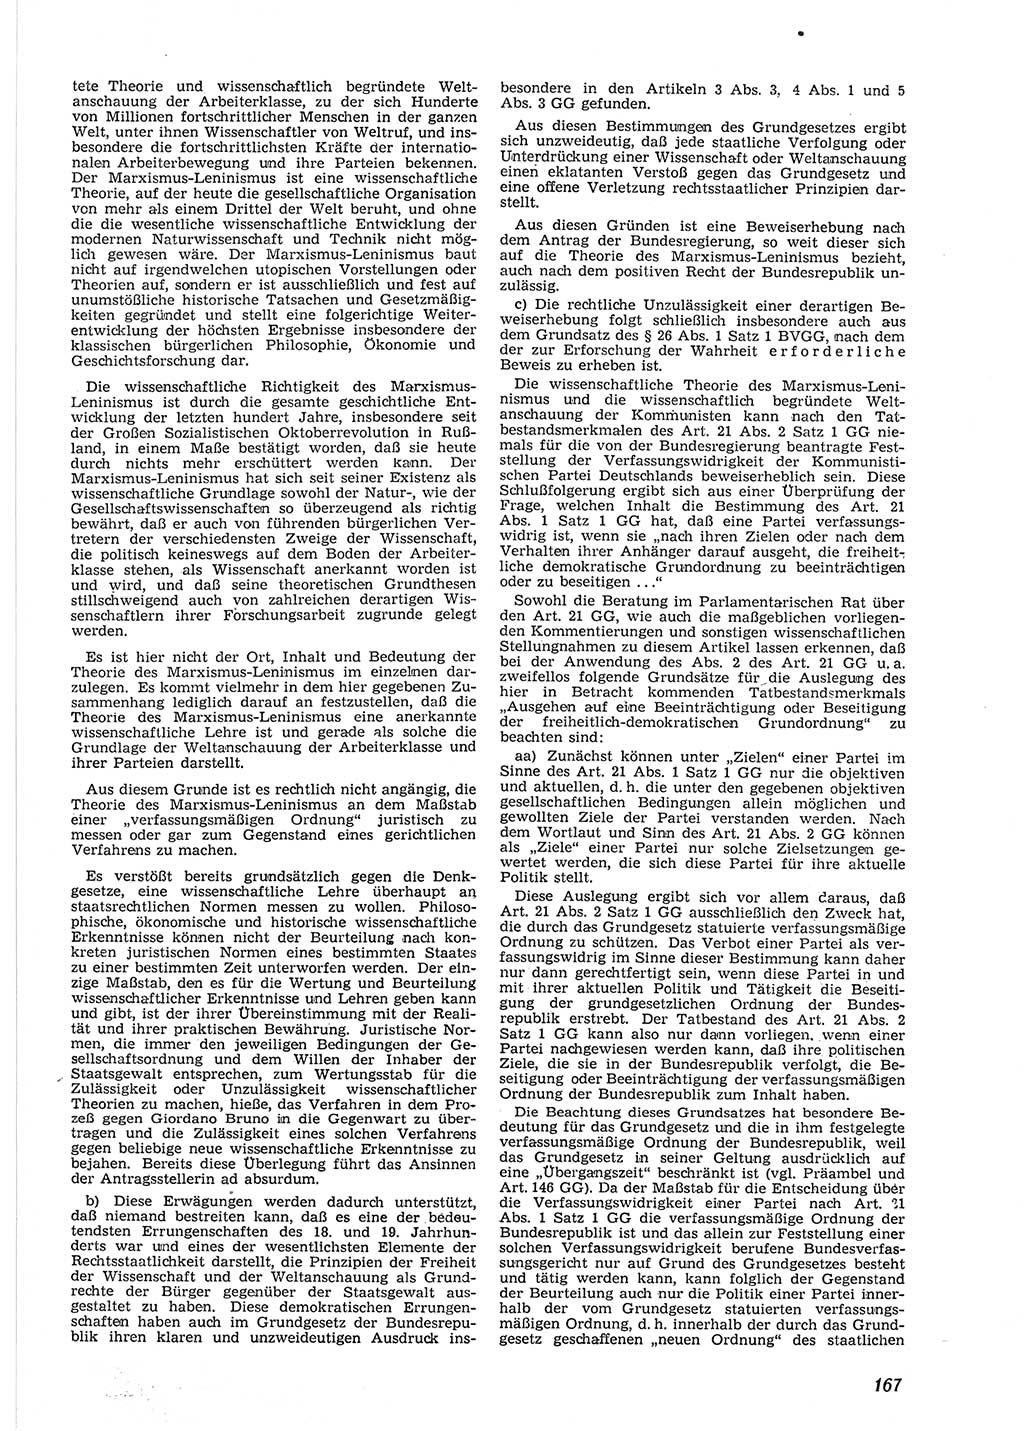 Neue Justiz (NJ), Zeitschrift für Recht und Rechtswissenschaft [Deutsche Demokratische Republik (DDR)], 9. Jahrgang 1955, Seite 167 (NJ DDR 1955, S. 167)